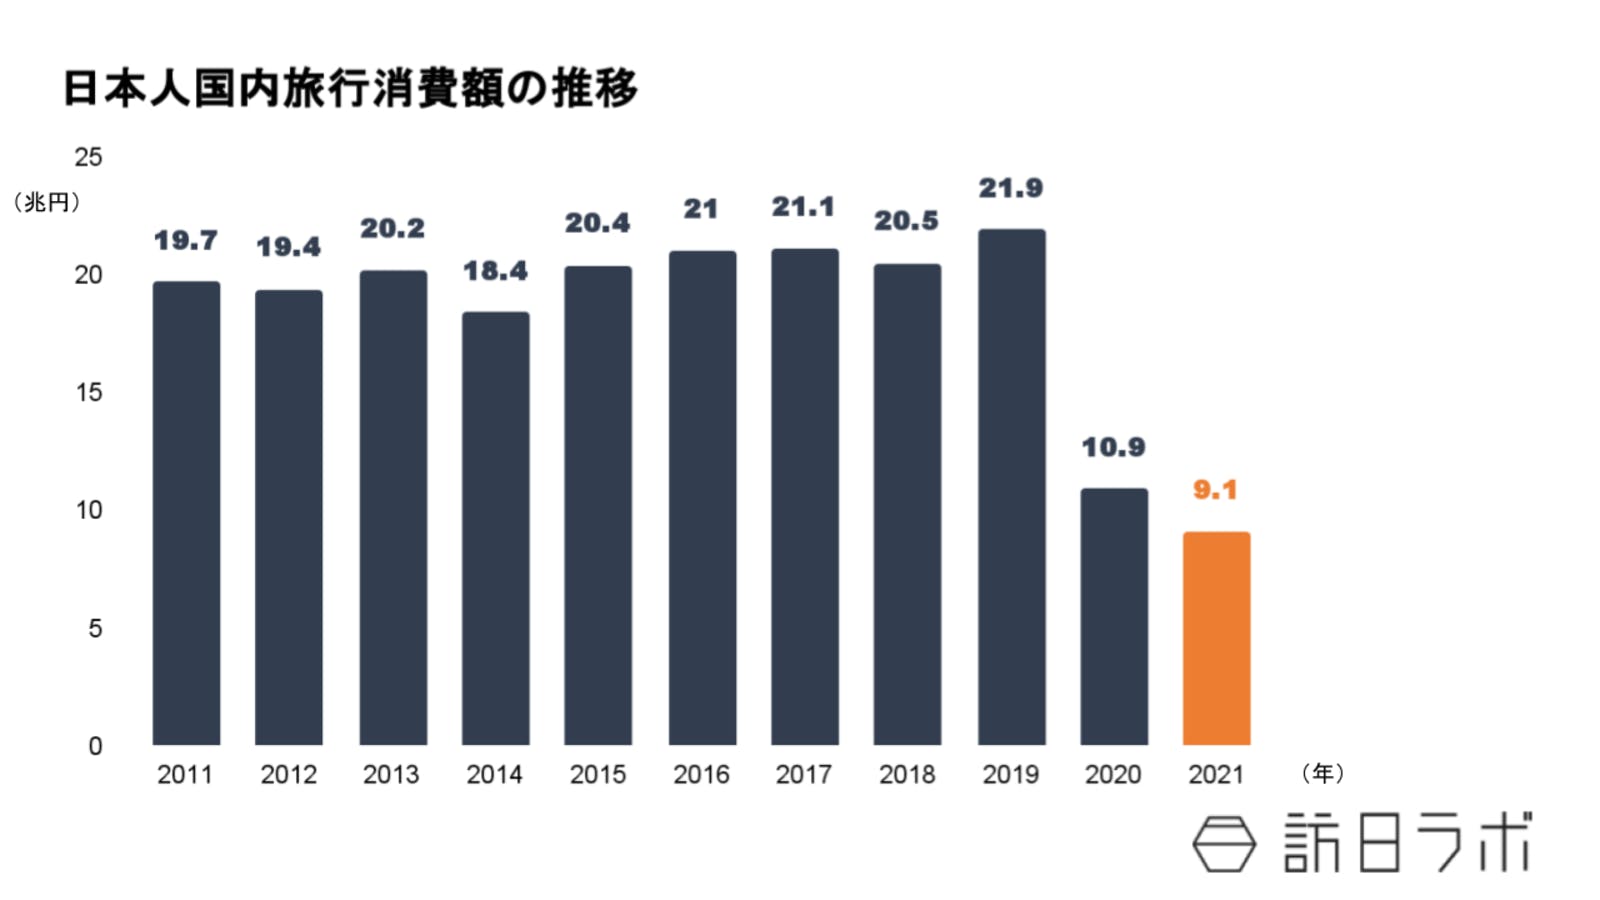 日本人国内旅行消費額の推移：観光庁より訪日ラボ作成